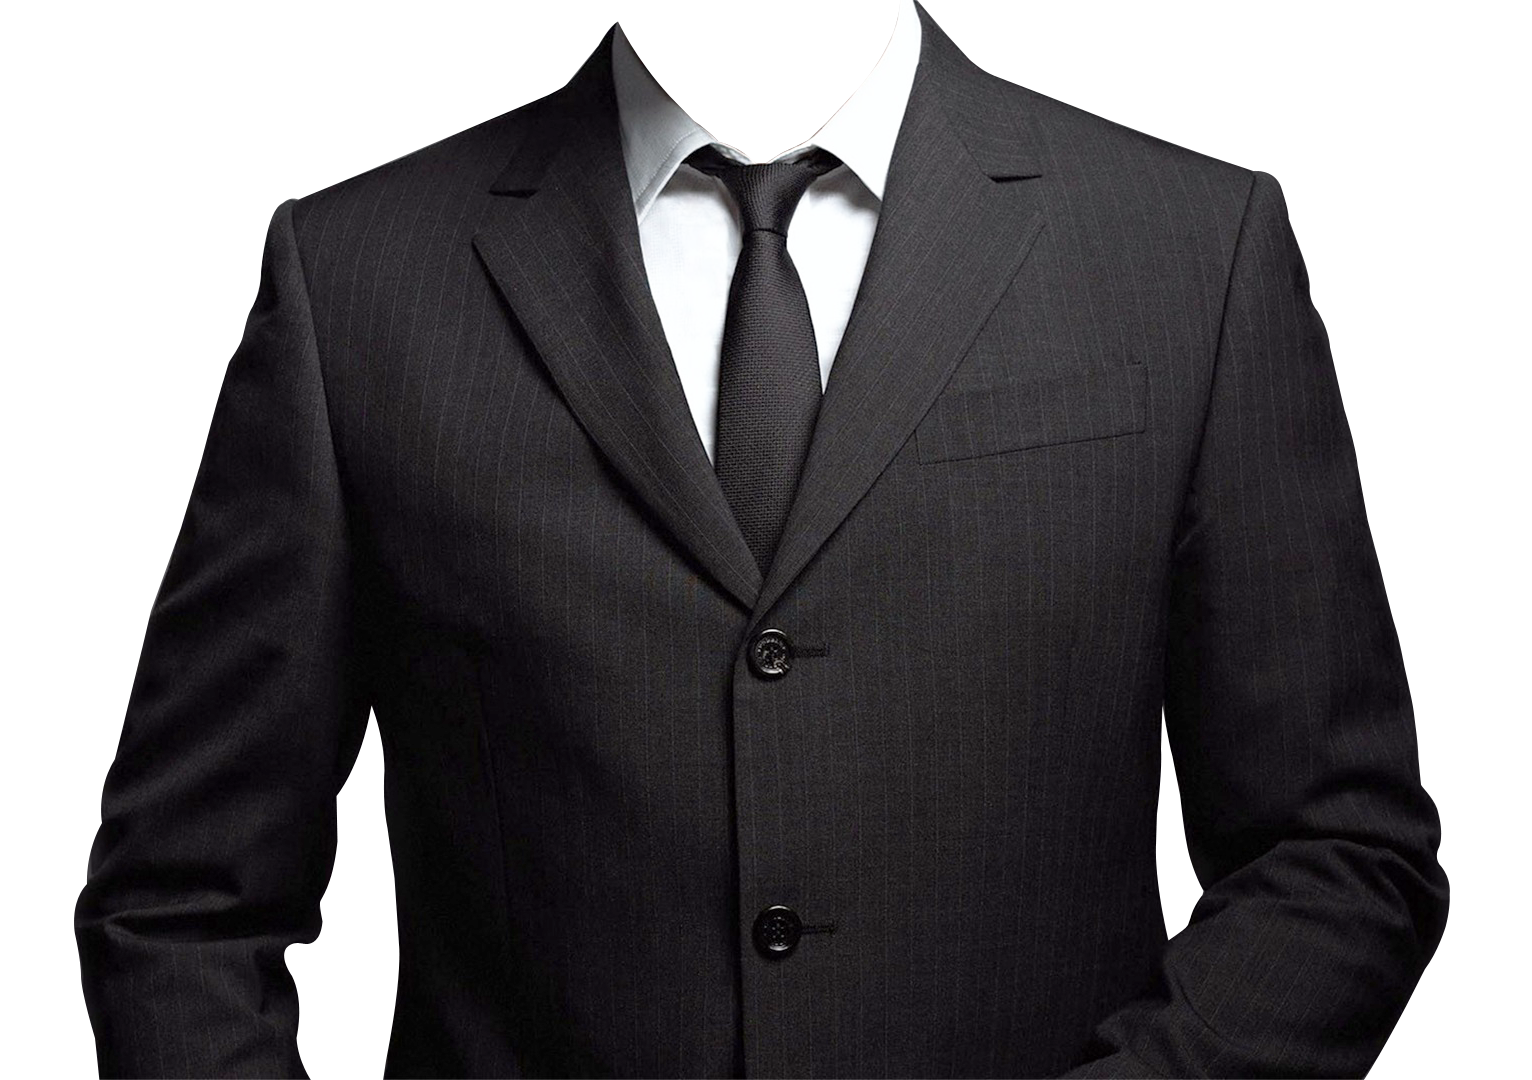 Suit Png Transparent Image - Suit, Transparent background PNG HD thumbnail